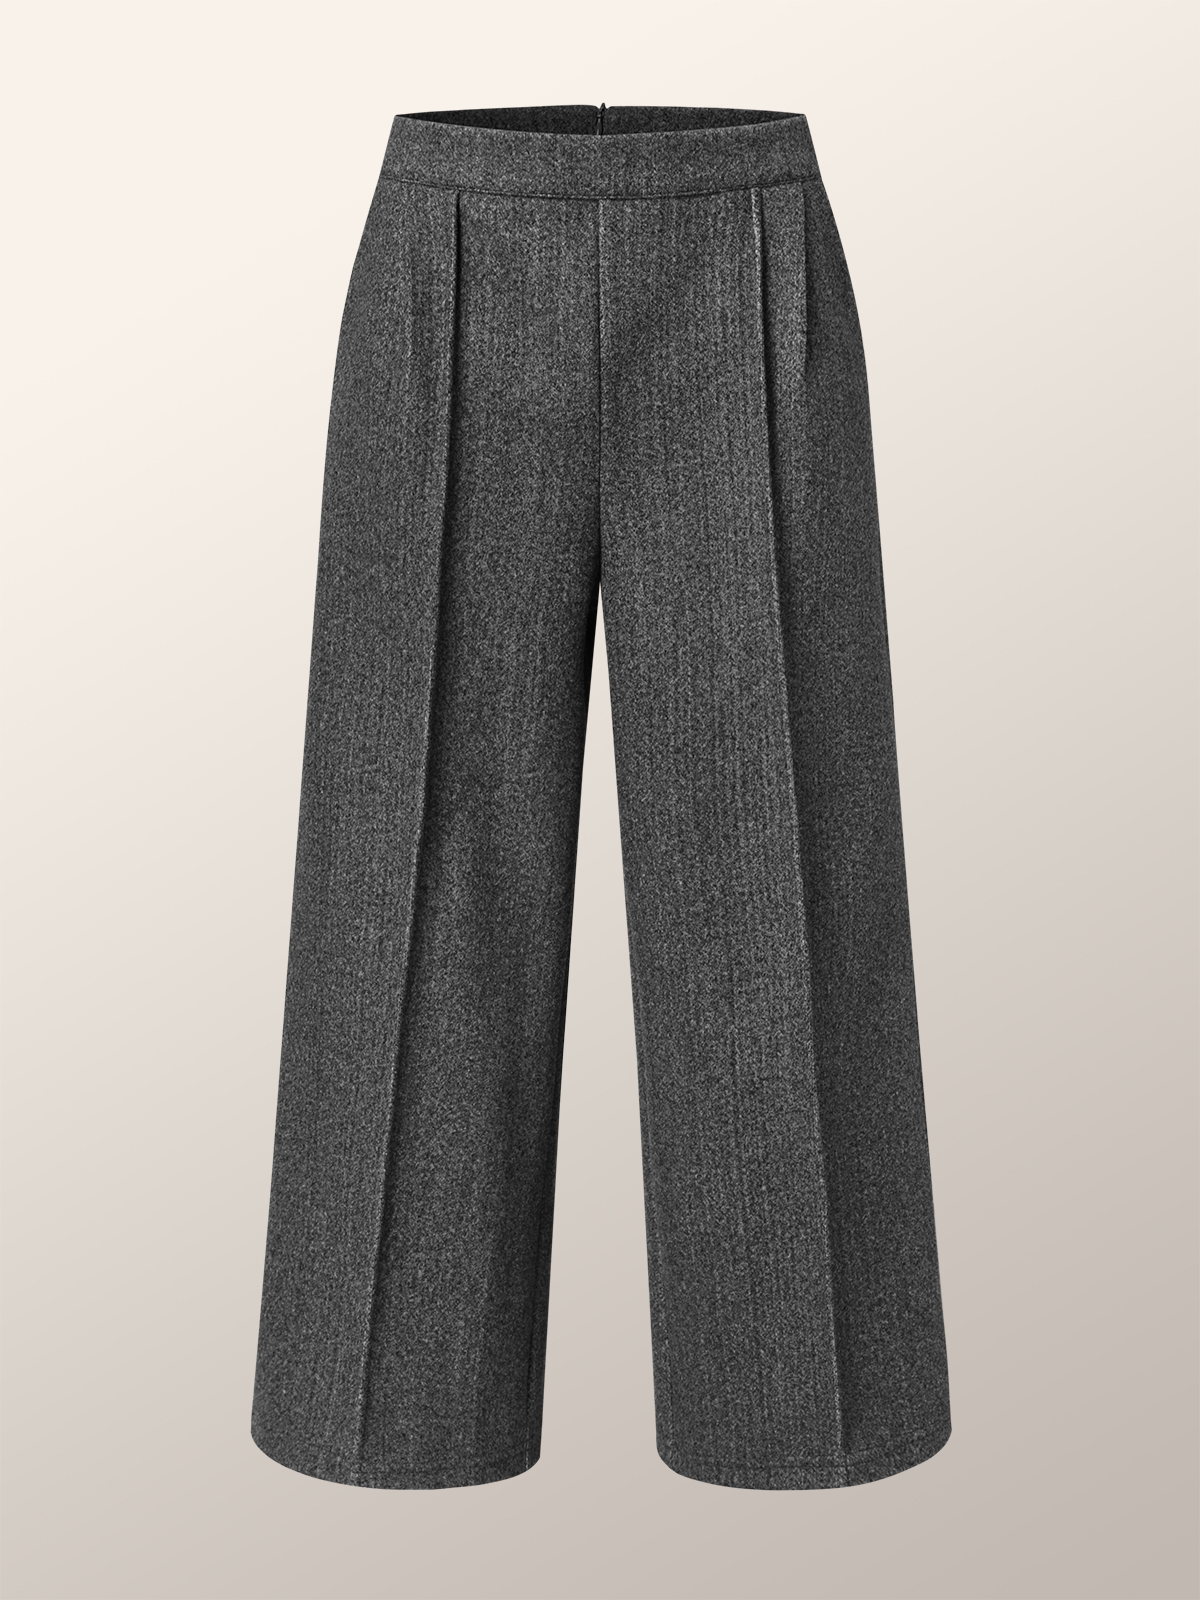 Mode Pantalons Plain Printemps / Automne Urbain Aucune élasticité Quotidien Taille Moyenne Étoffe de laine Droit Régulier pour Femmes